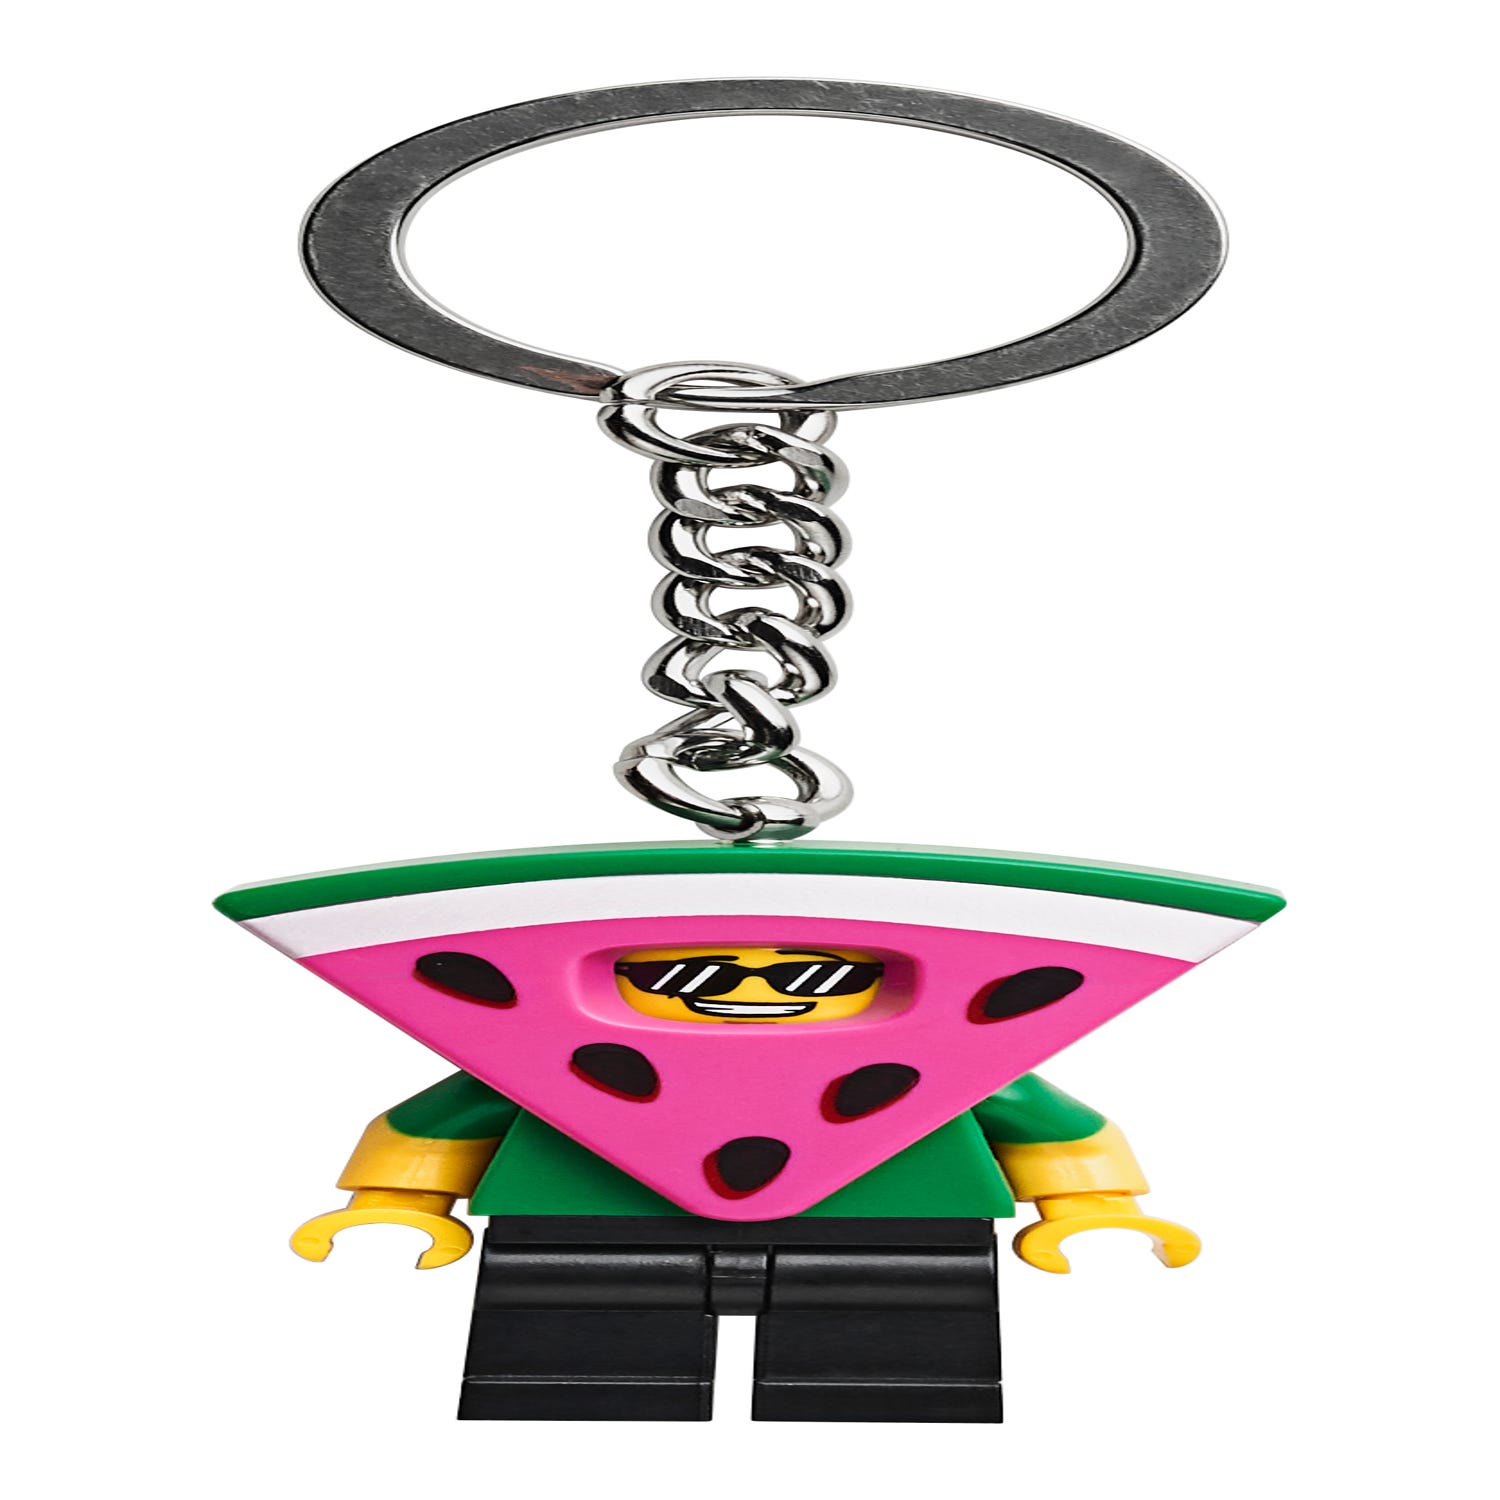 Omgeving beweeglijkheid Compliment Watermeloenman sleutelhanger 854039 | Overig | Officiële LEGO® winkel NL